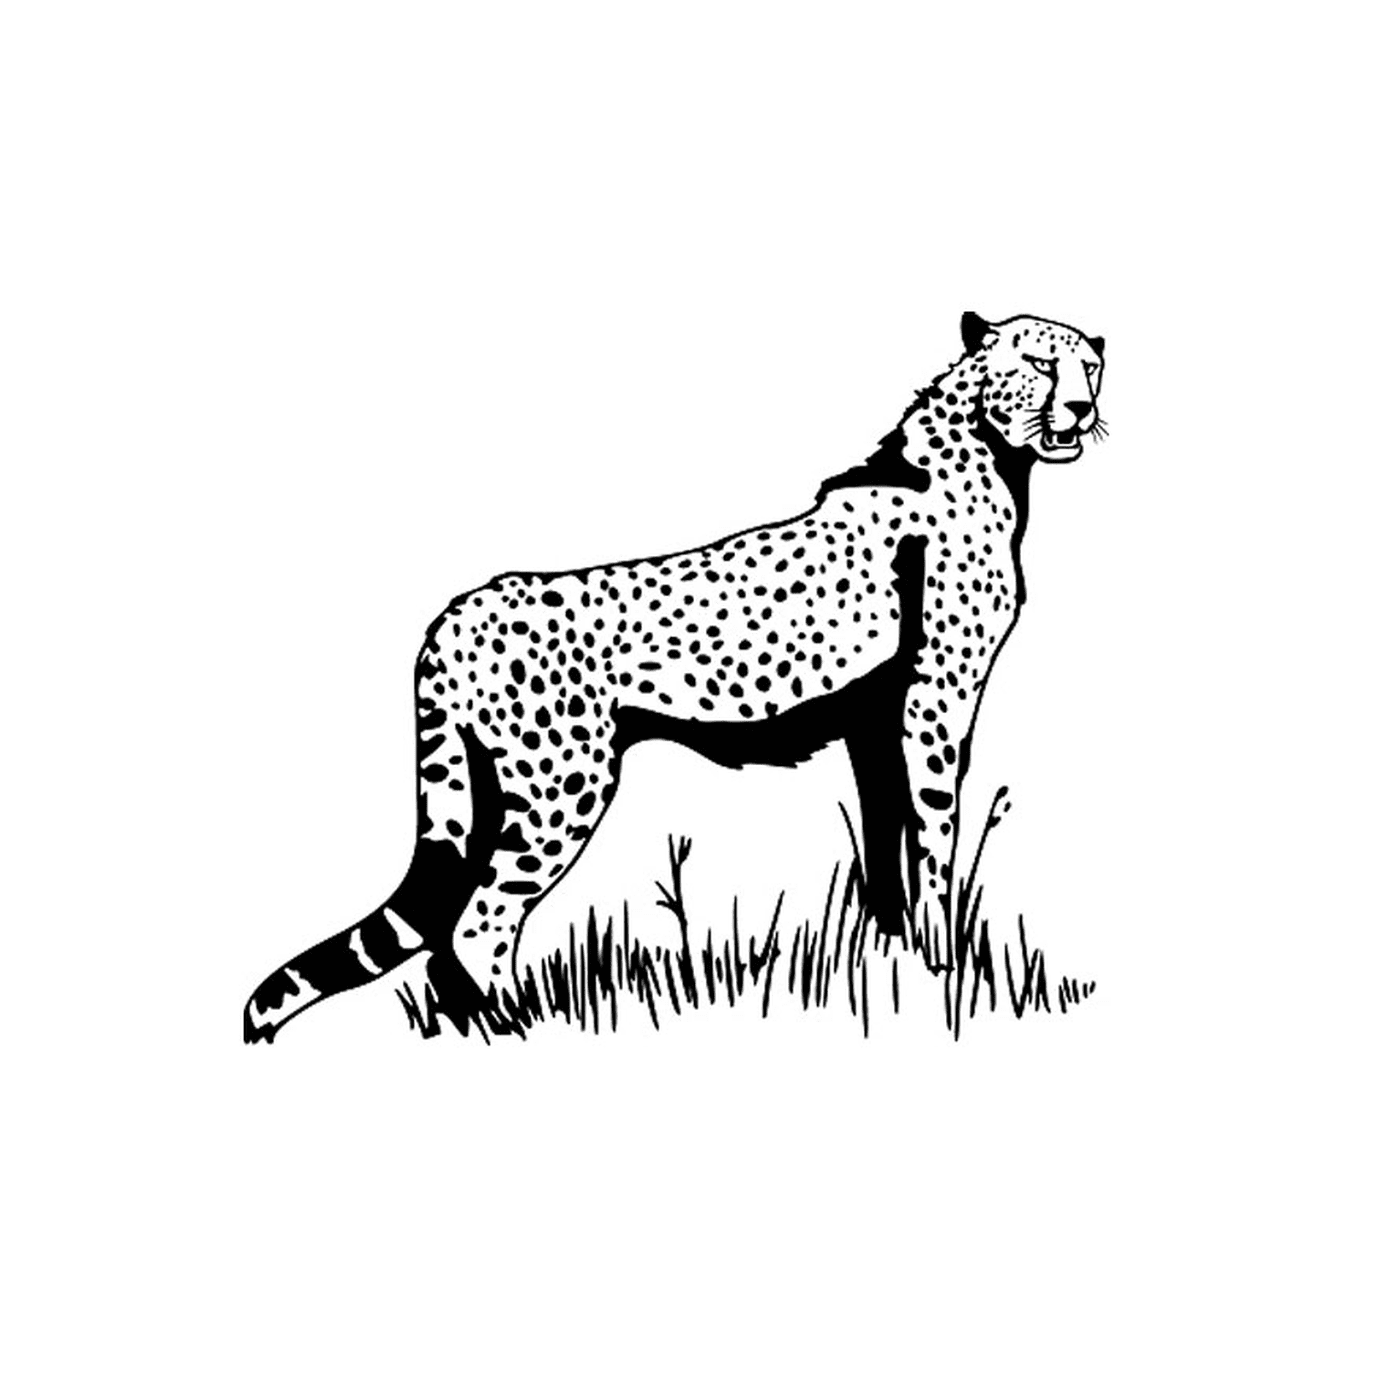  Un ghepardo 